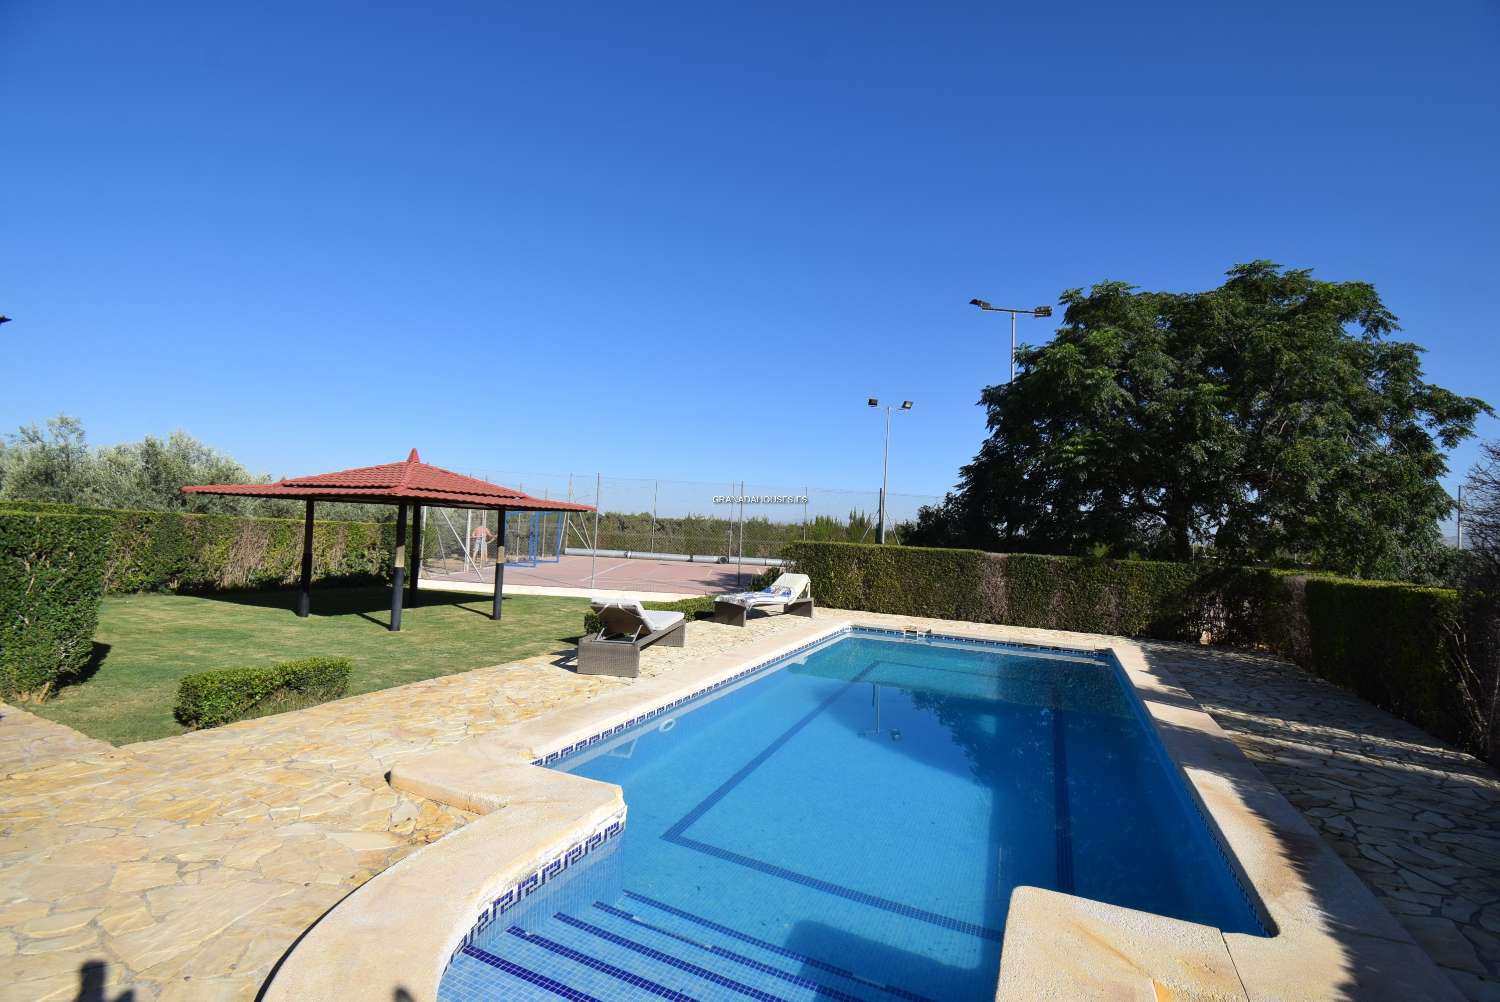 Fantastische vrijstaande villa met tennisbaan, zwembad en geweldig uitzicht